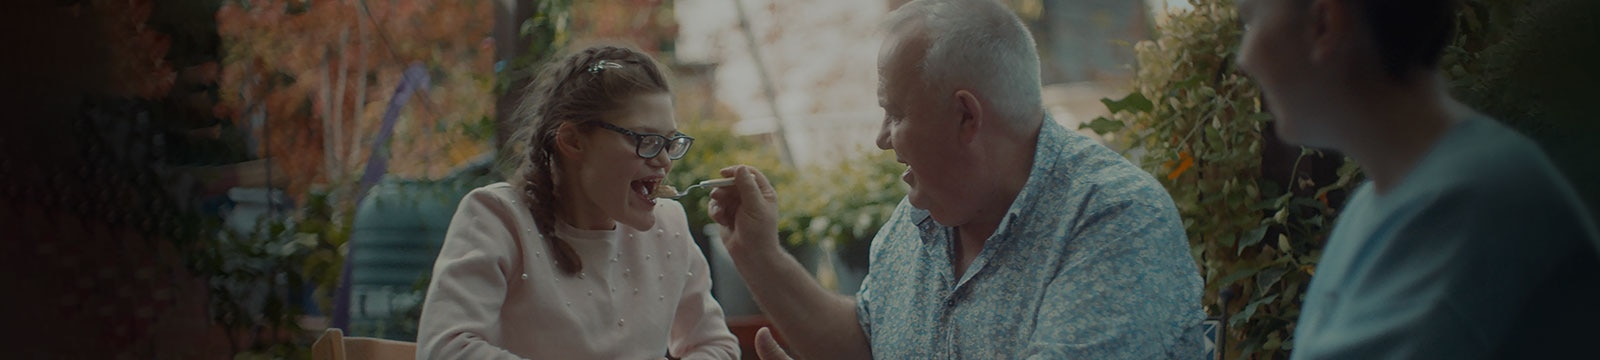 Un hombre sonriente, sentado al aire libre, le da de comer a su hija adolescente.